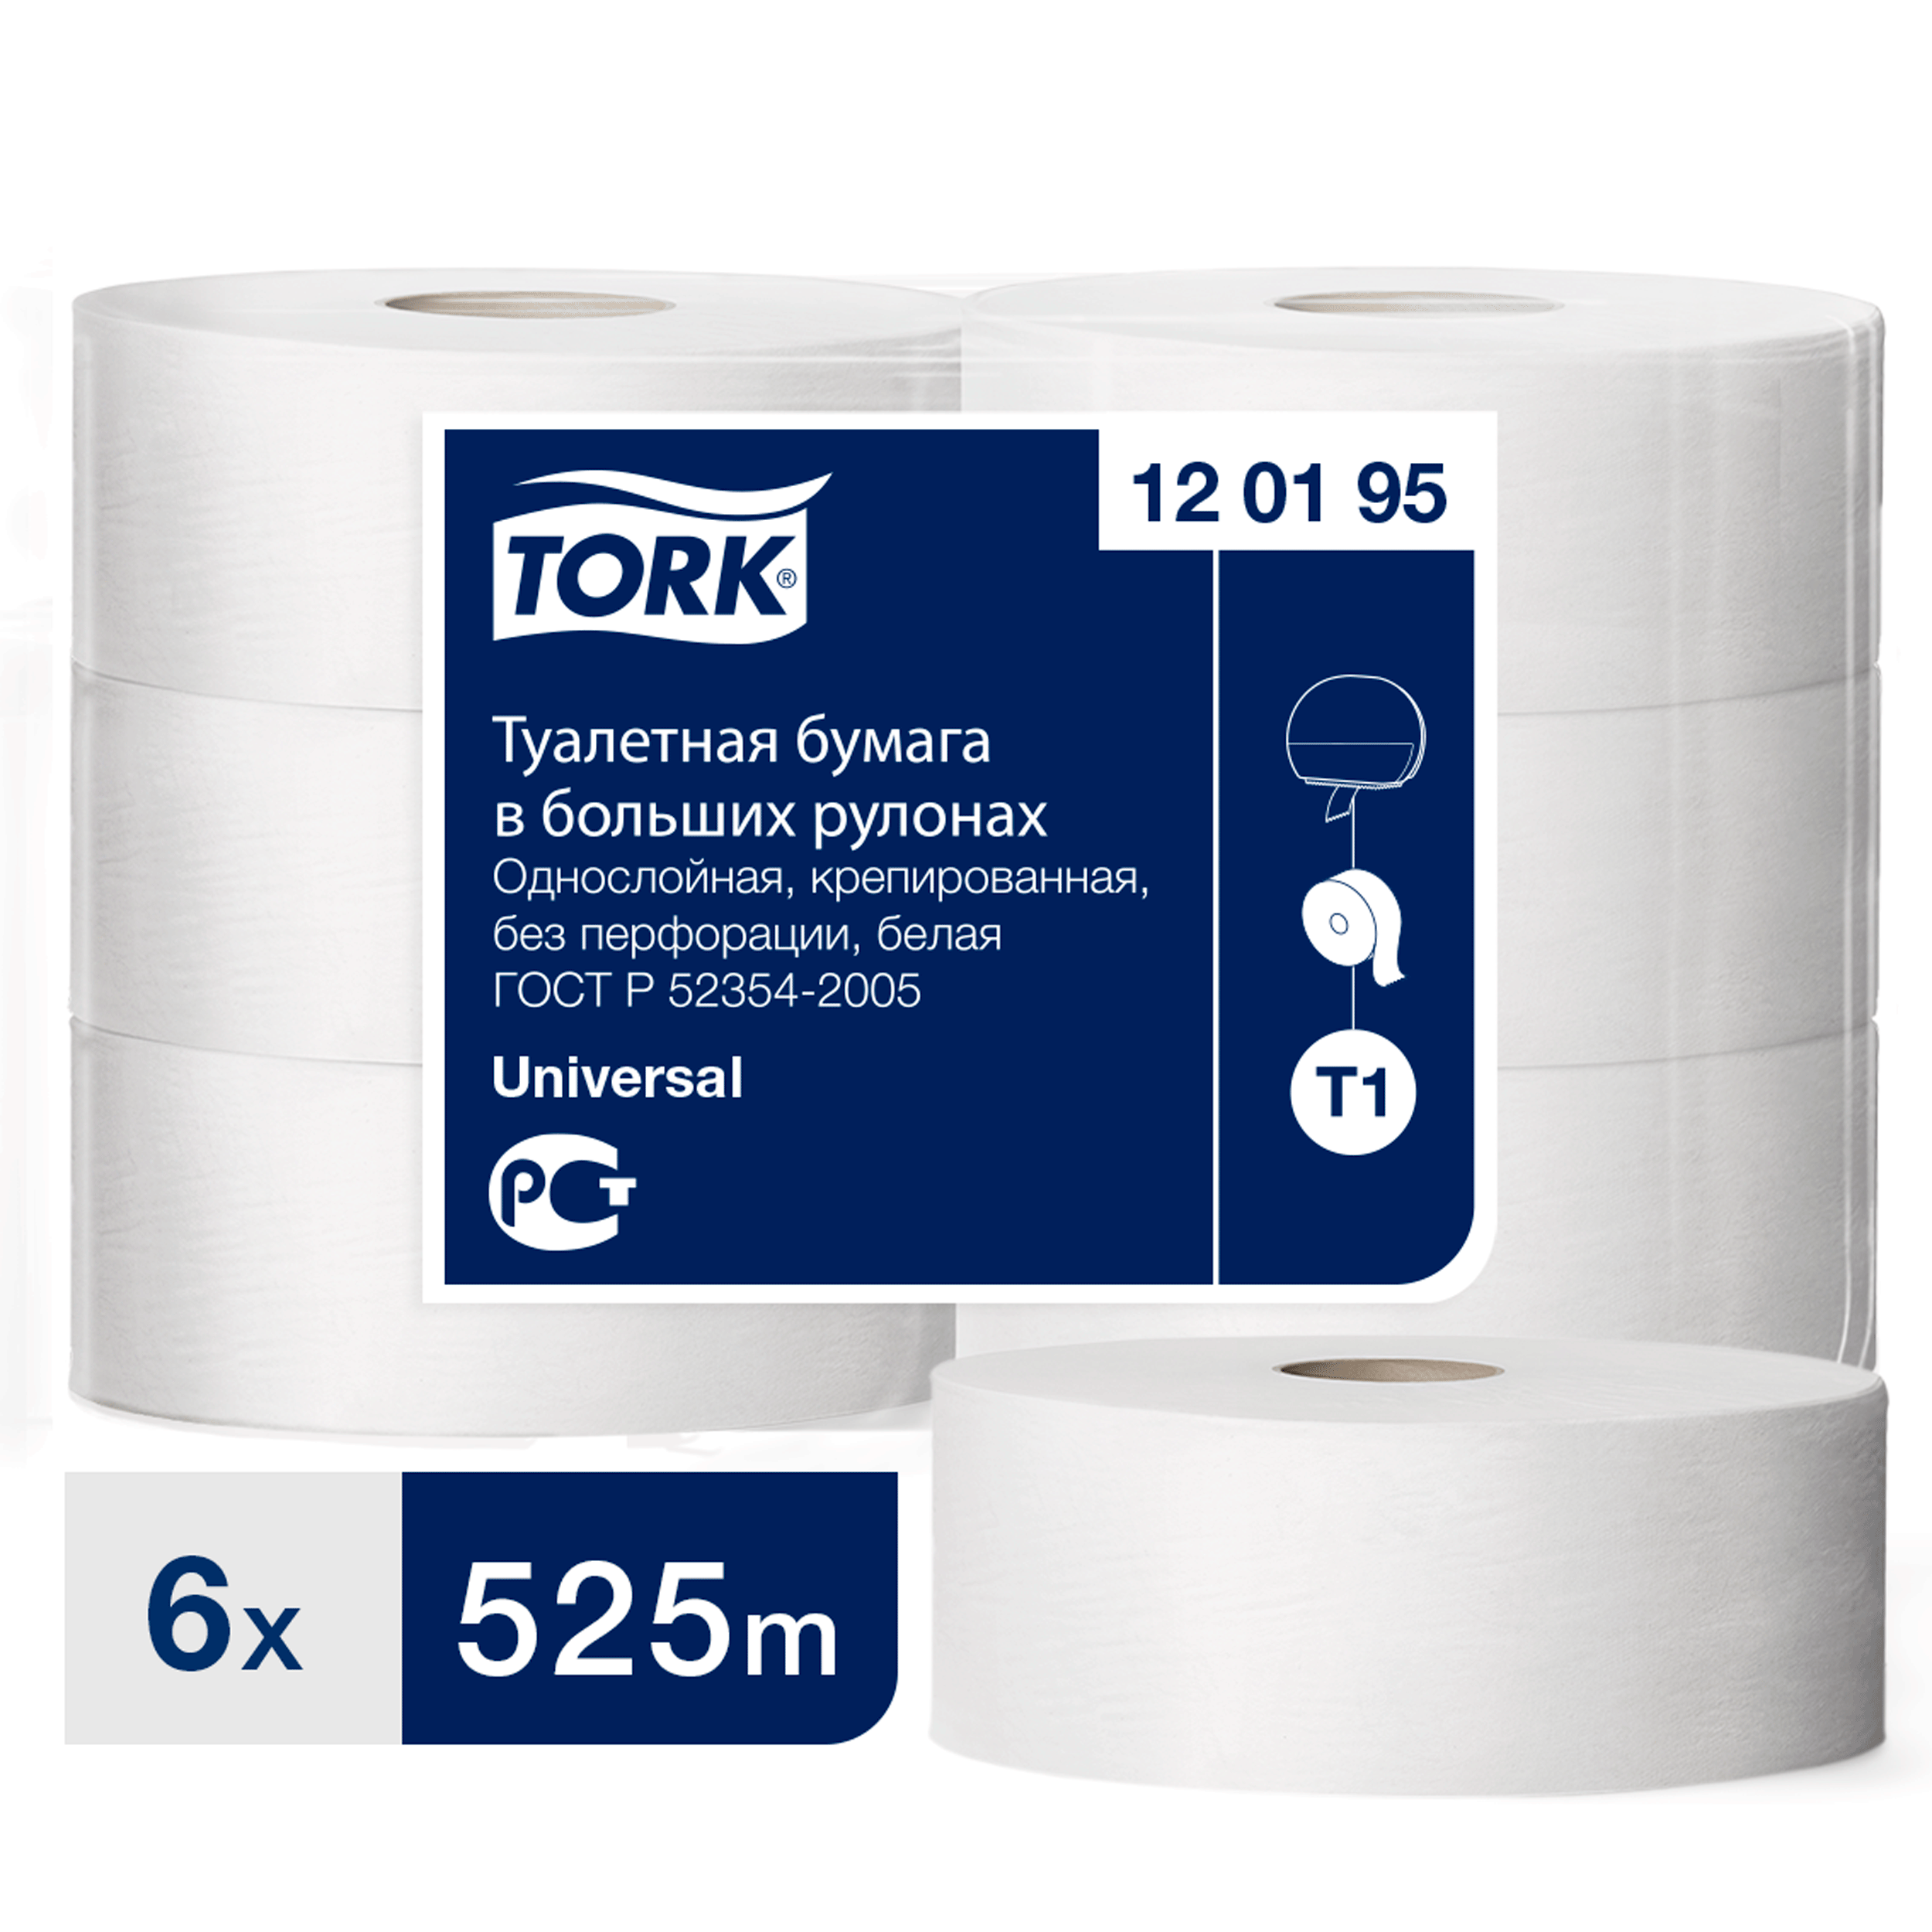 туалетная бумага tork universal листовая 250 листов 1 слой 40 пачек в коробе Туалетная бумага Tork в больших рулонах, T1, 1 слой, 525 м, ширина 9,5см, 6 шт